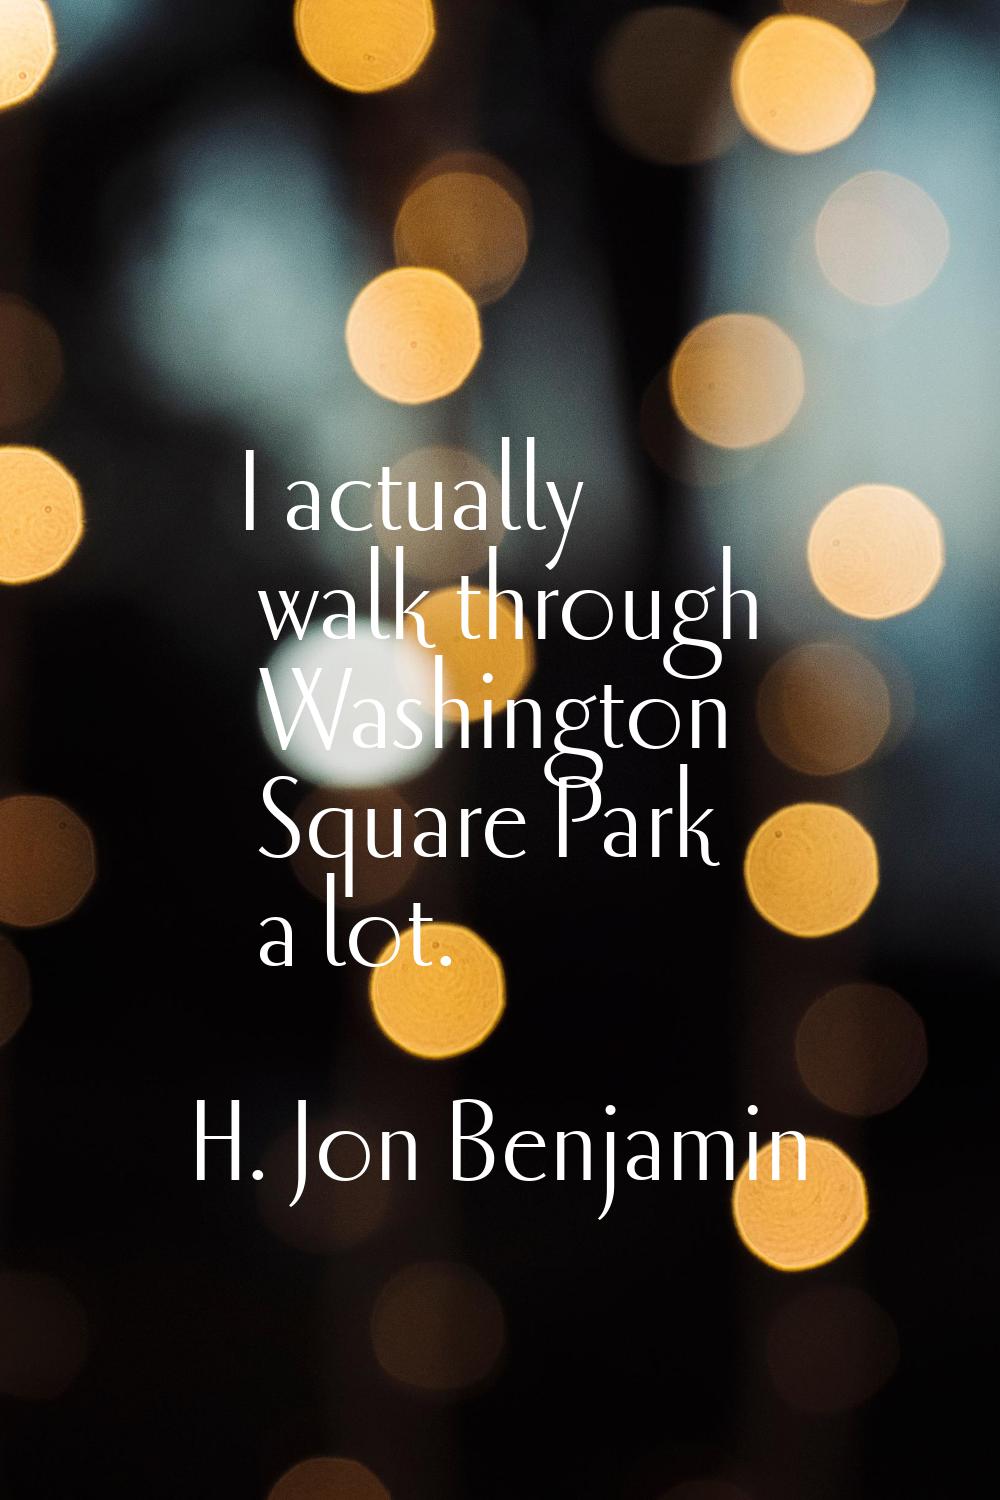 I actually walk through Washington Square Park a lot.